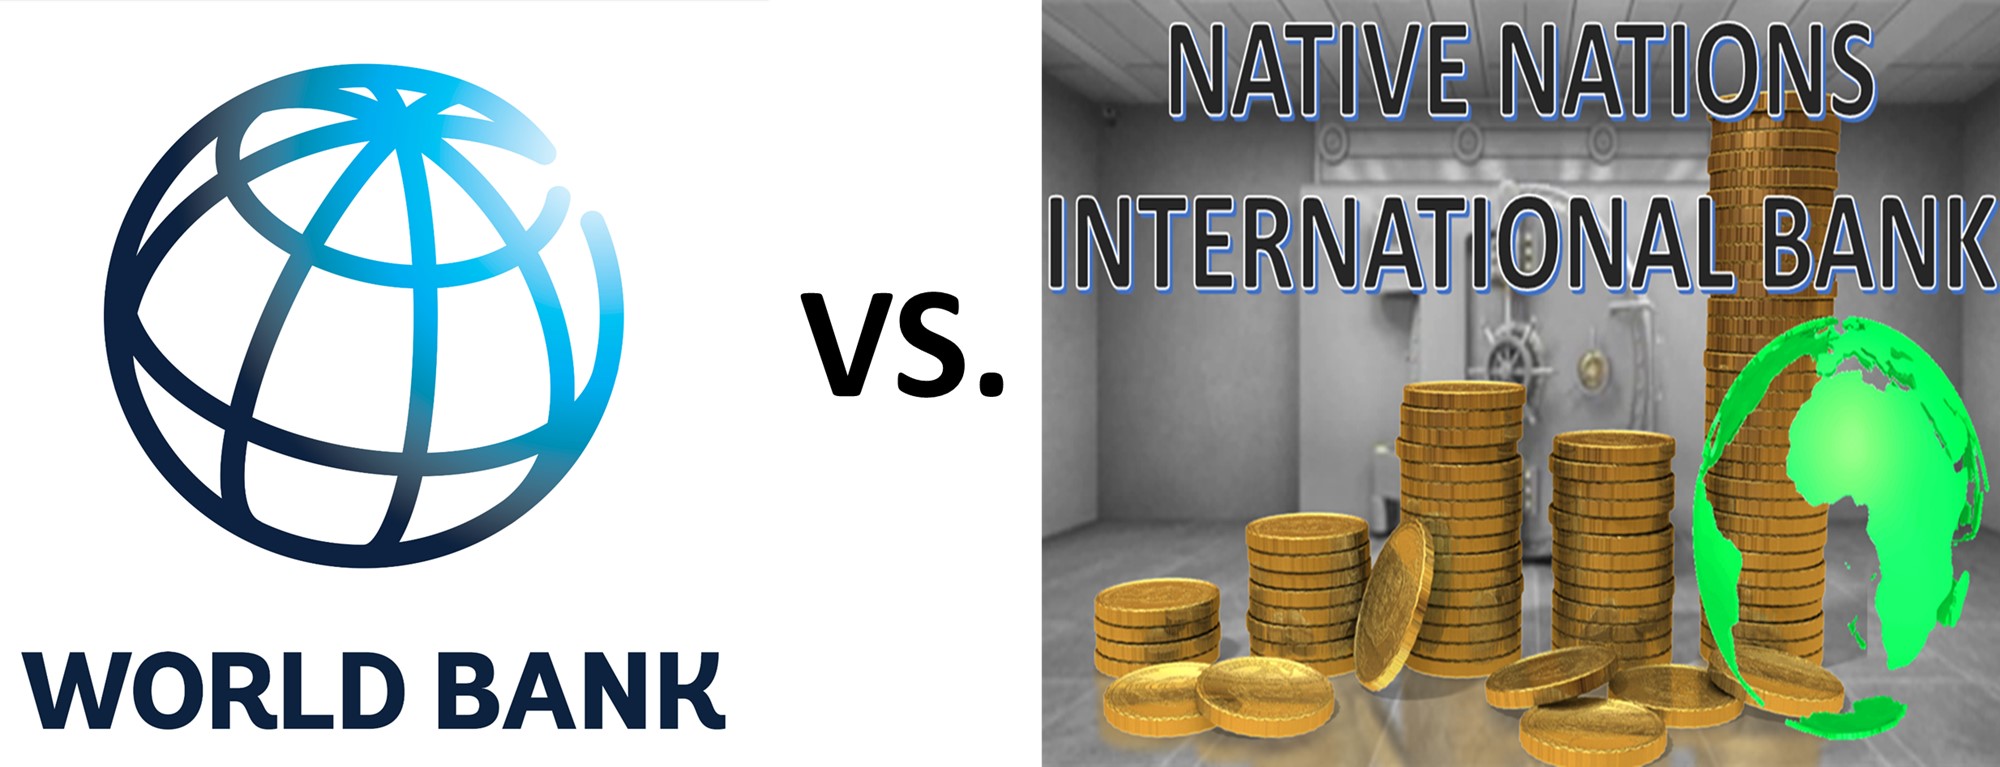 WORLD BANK vs NATIVE NATIONS INTERNATIONAL BANK